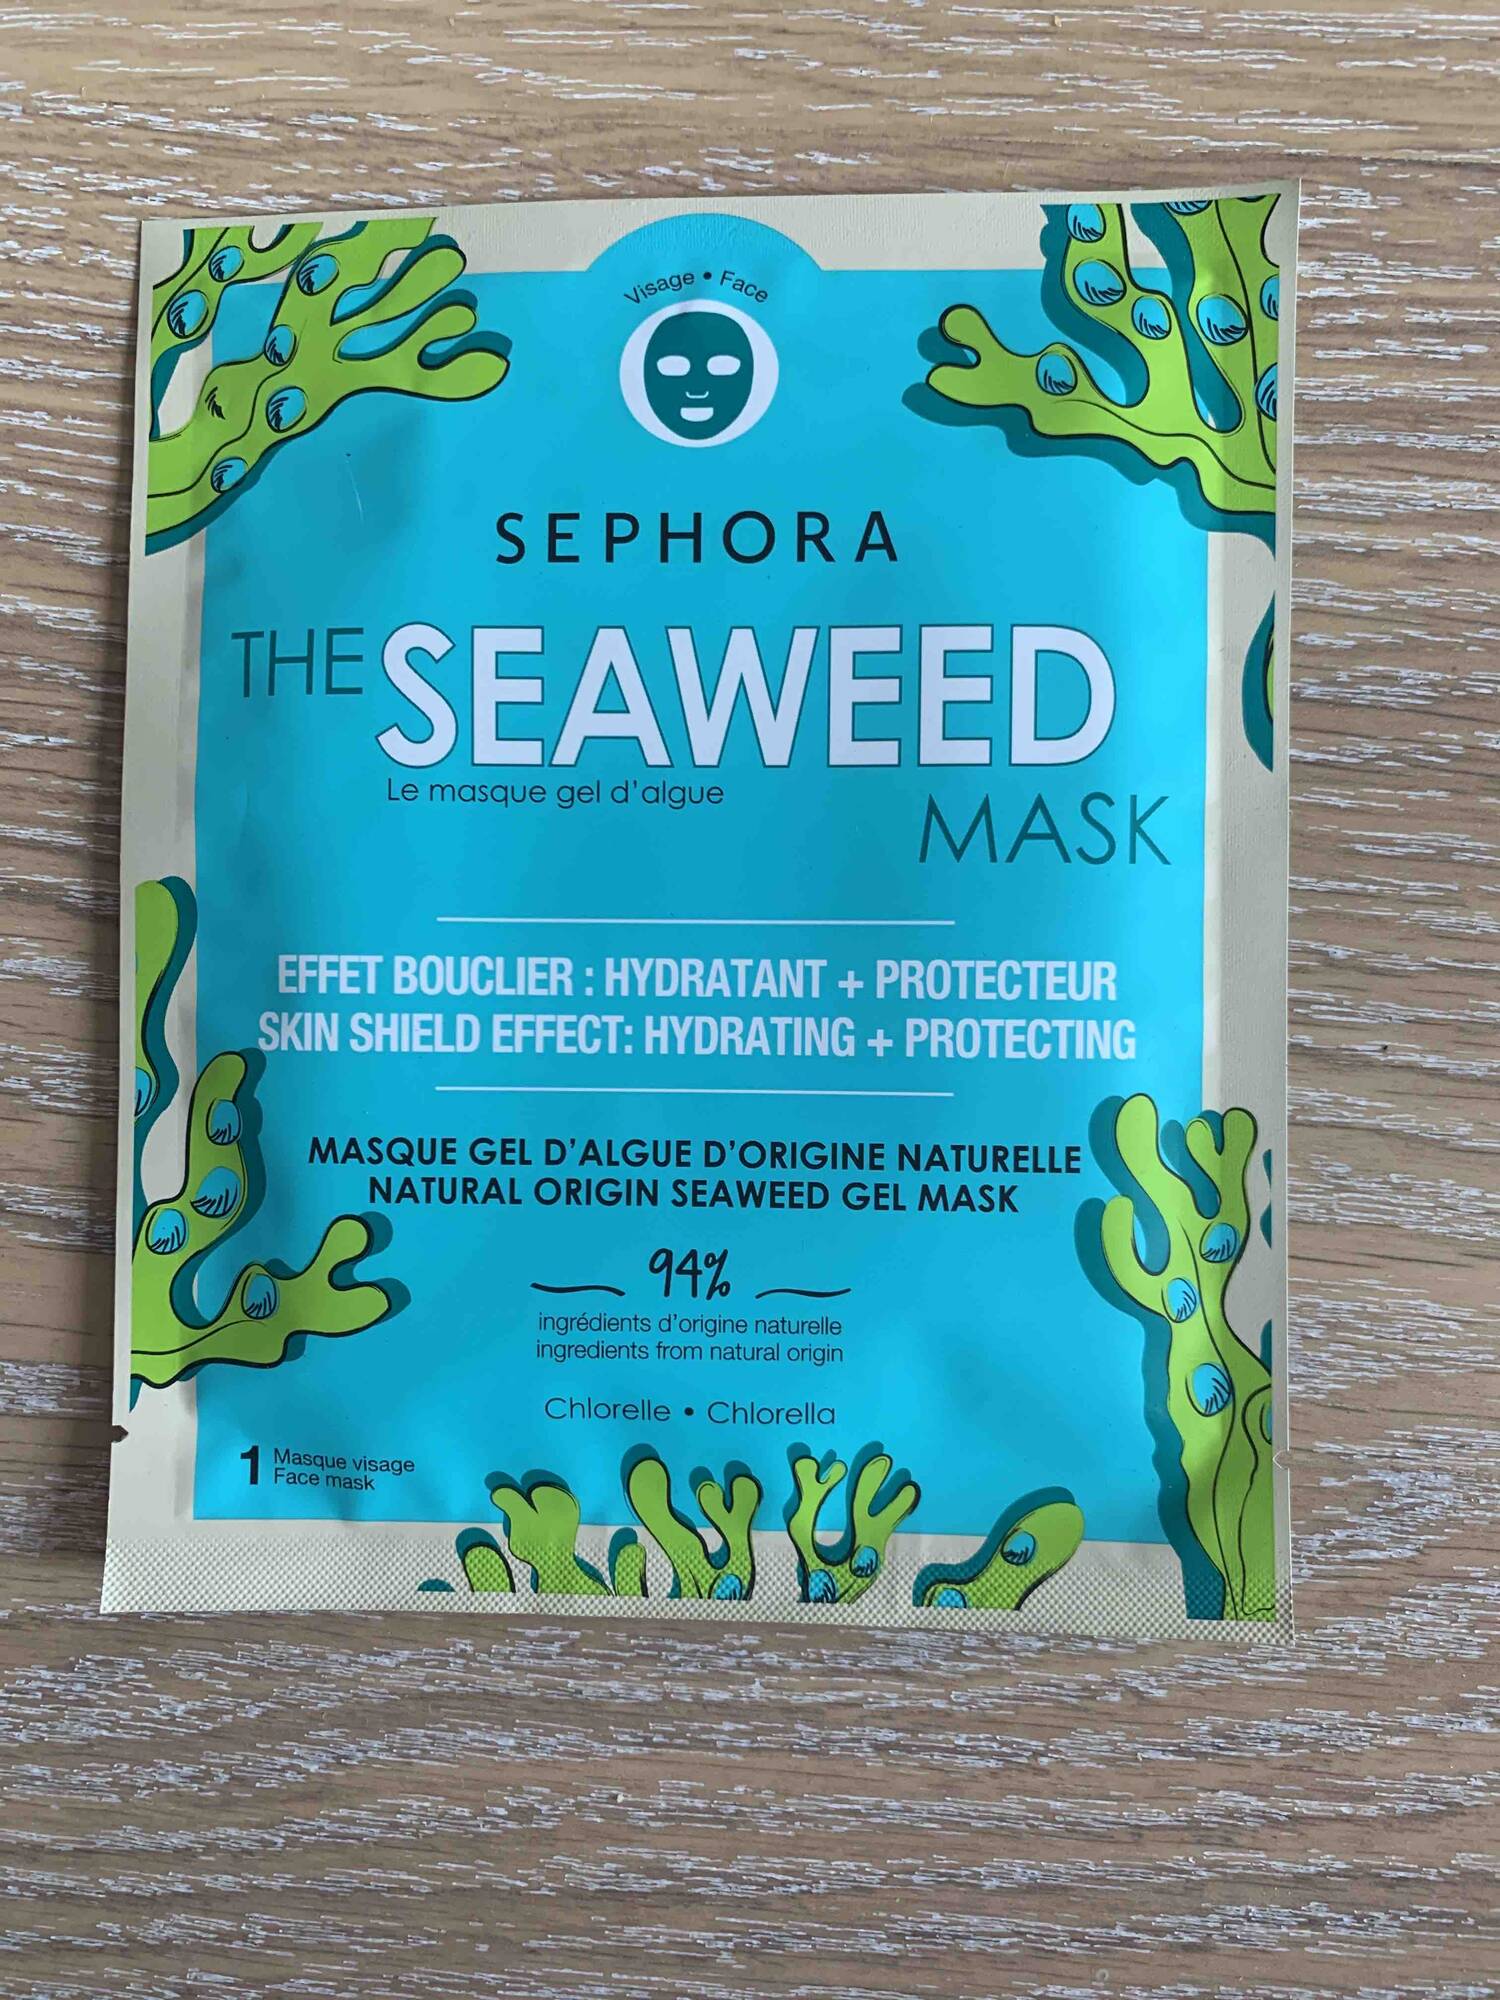 SEPHORA - Masque gel d'algue d'origine naturelle